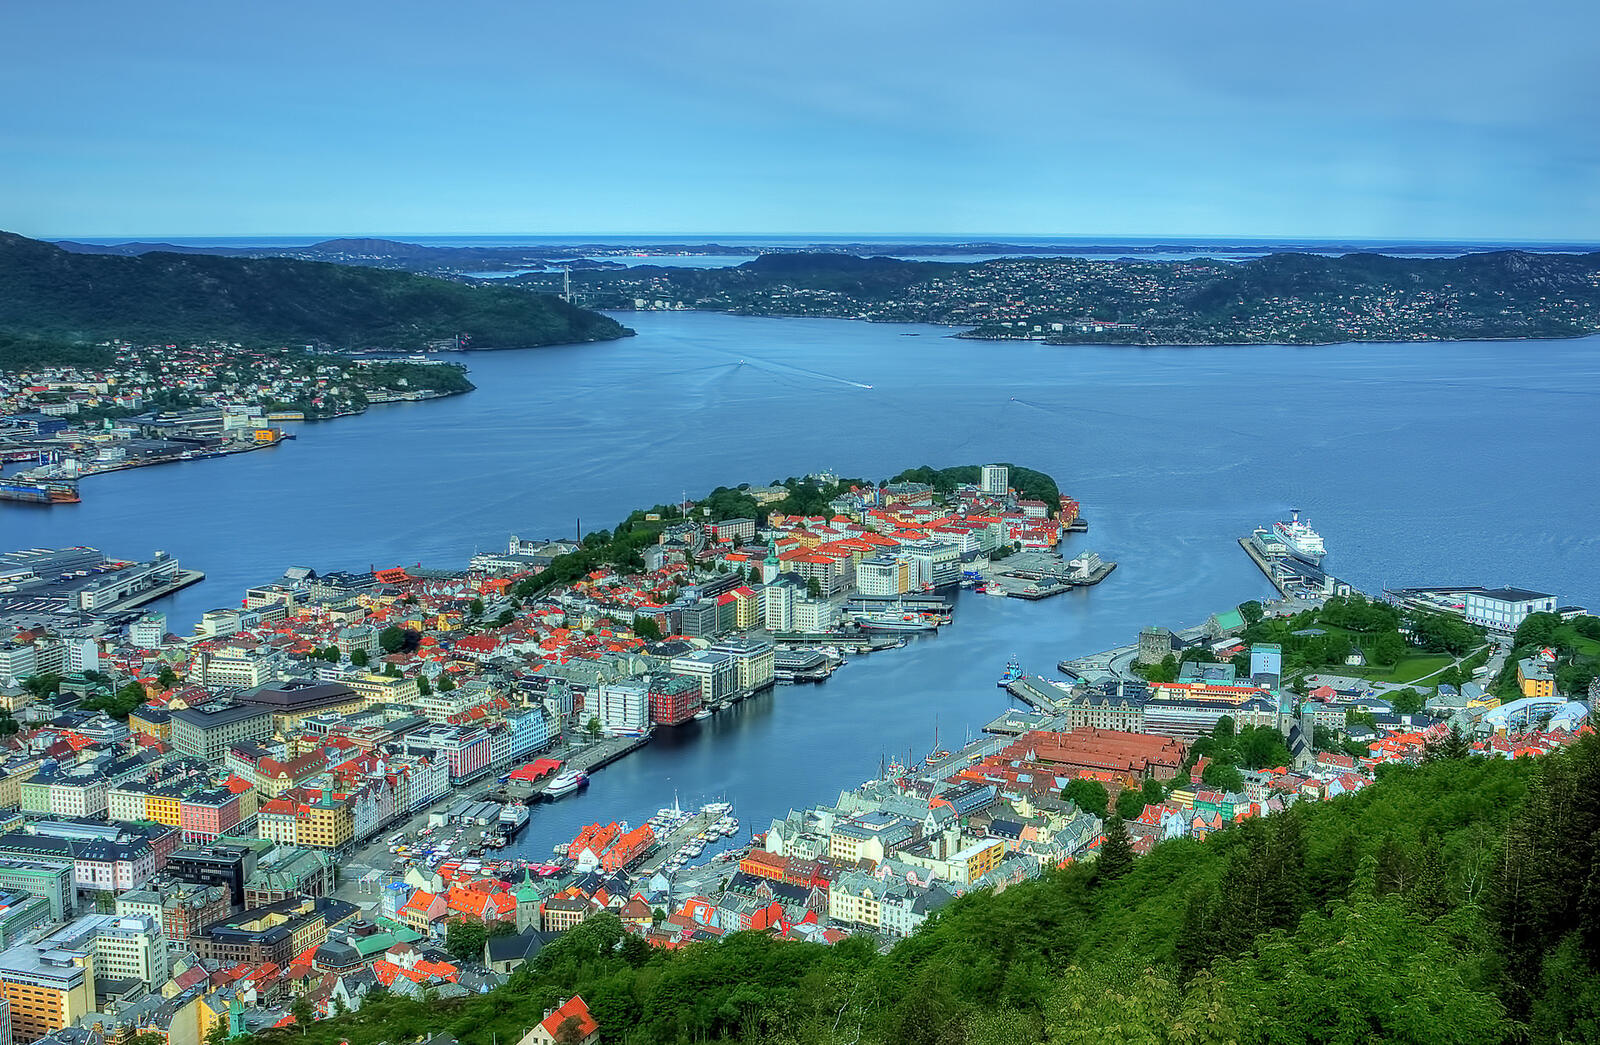 Wallpapers Bergen Norway city on the desktop